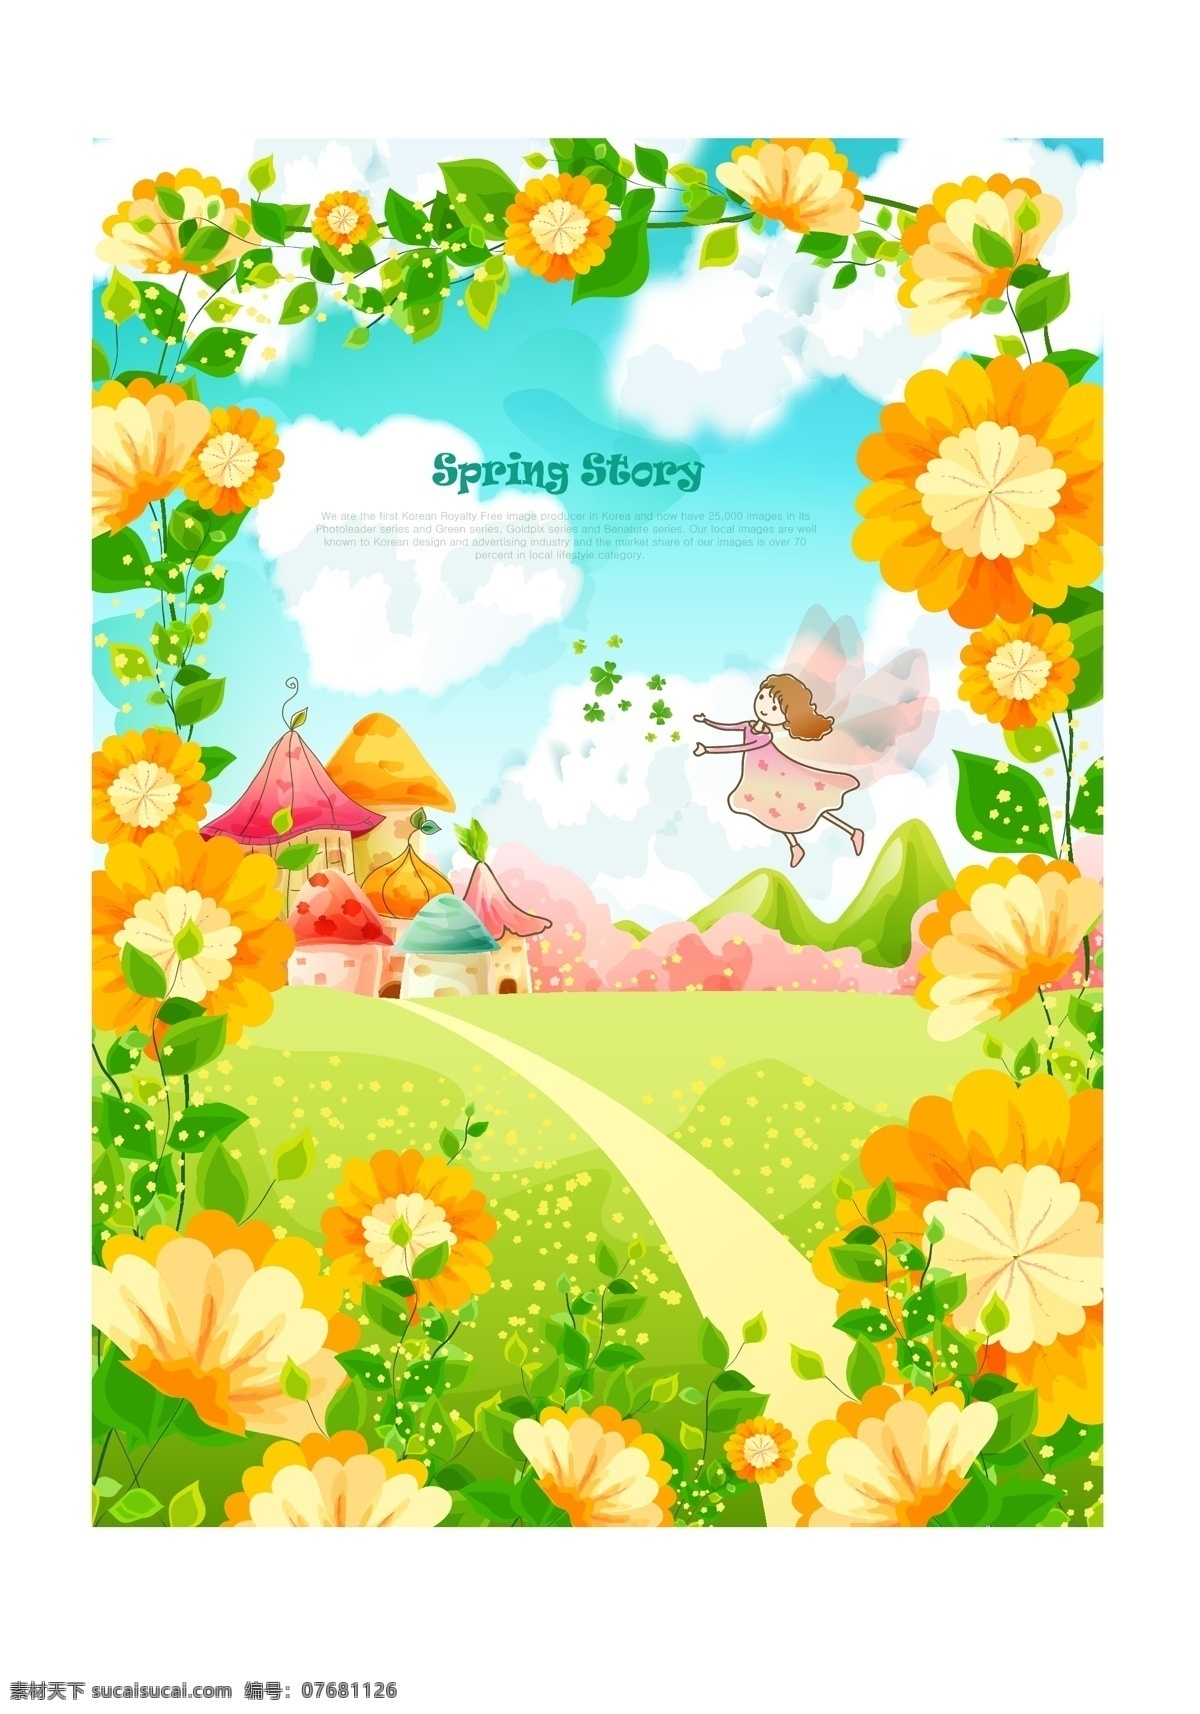 仙境 童话 卡通 风景 矢量 矢量素材 可爱女孩 卡通鲜花 树木 花草 城堡 黄色